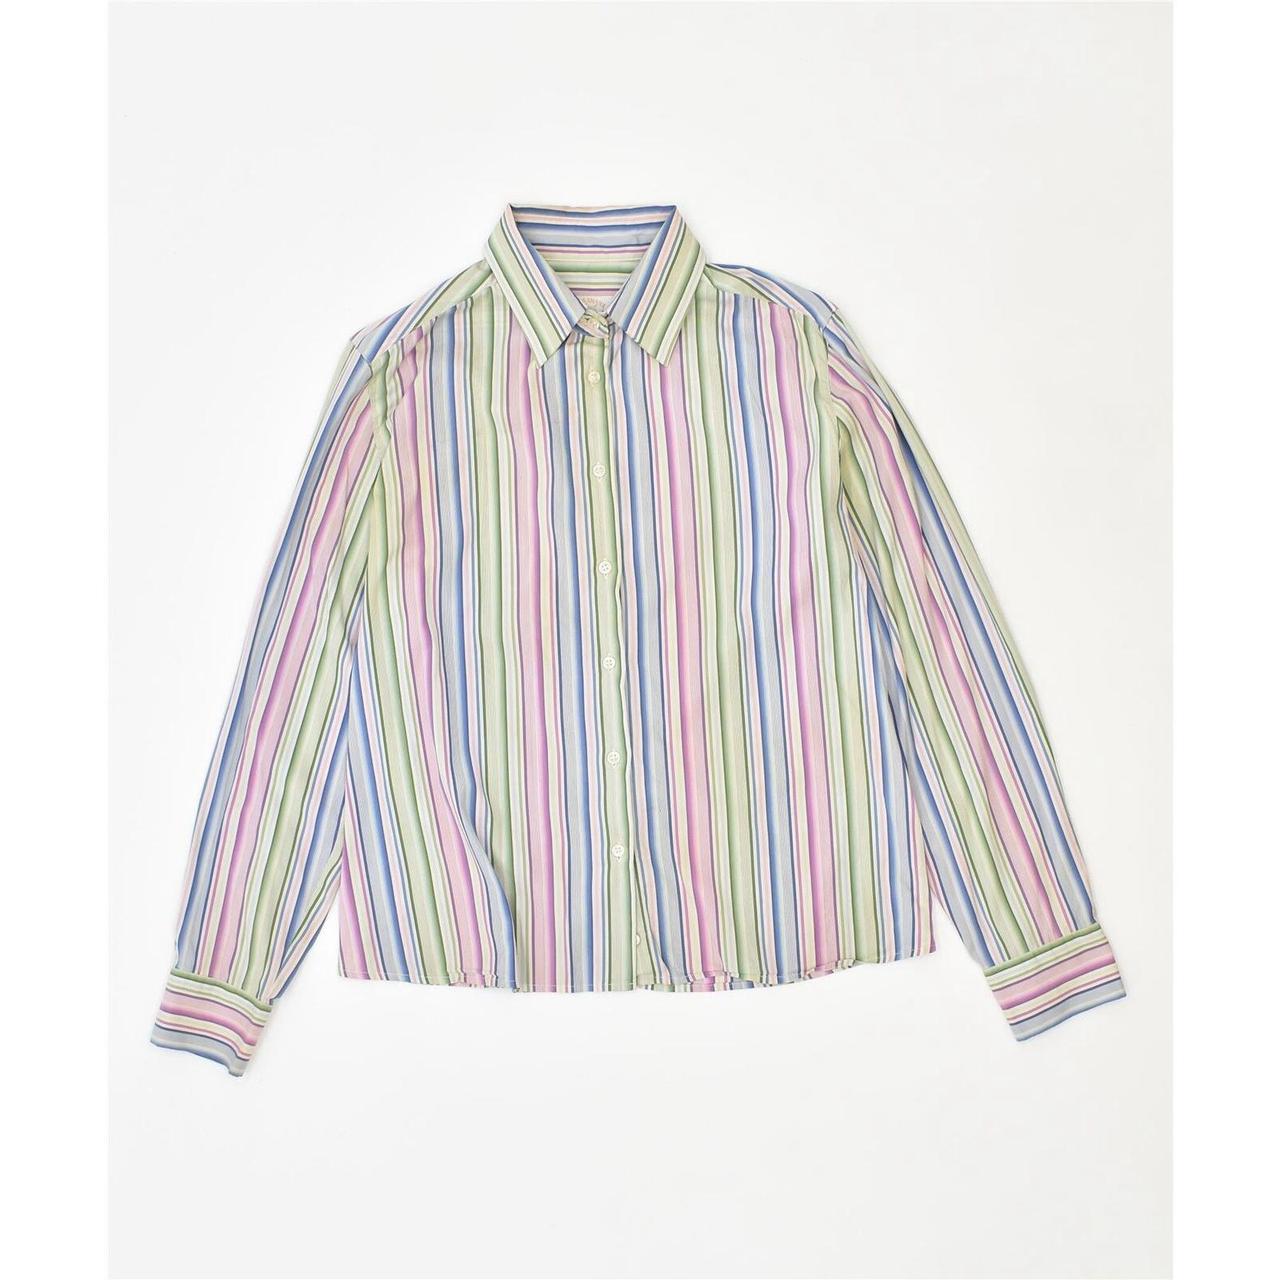 PAUL & SHARK Womens Shirt IT 42 Medium Multicoloured... - Depop